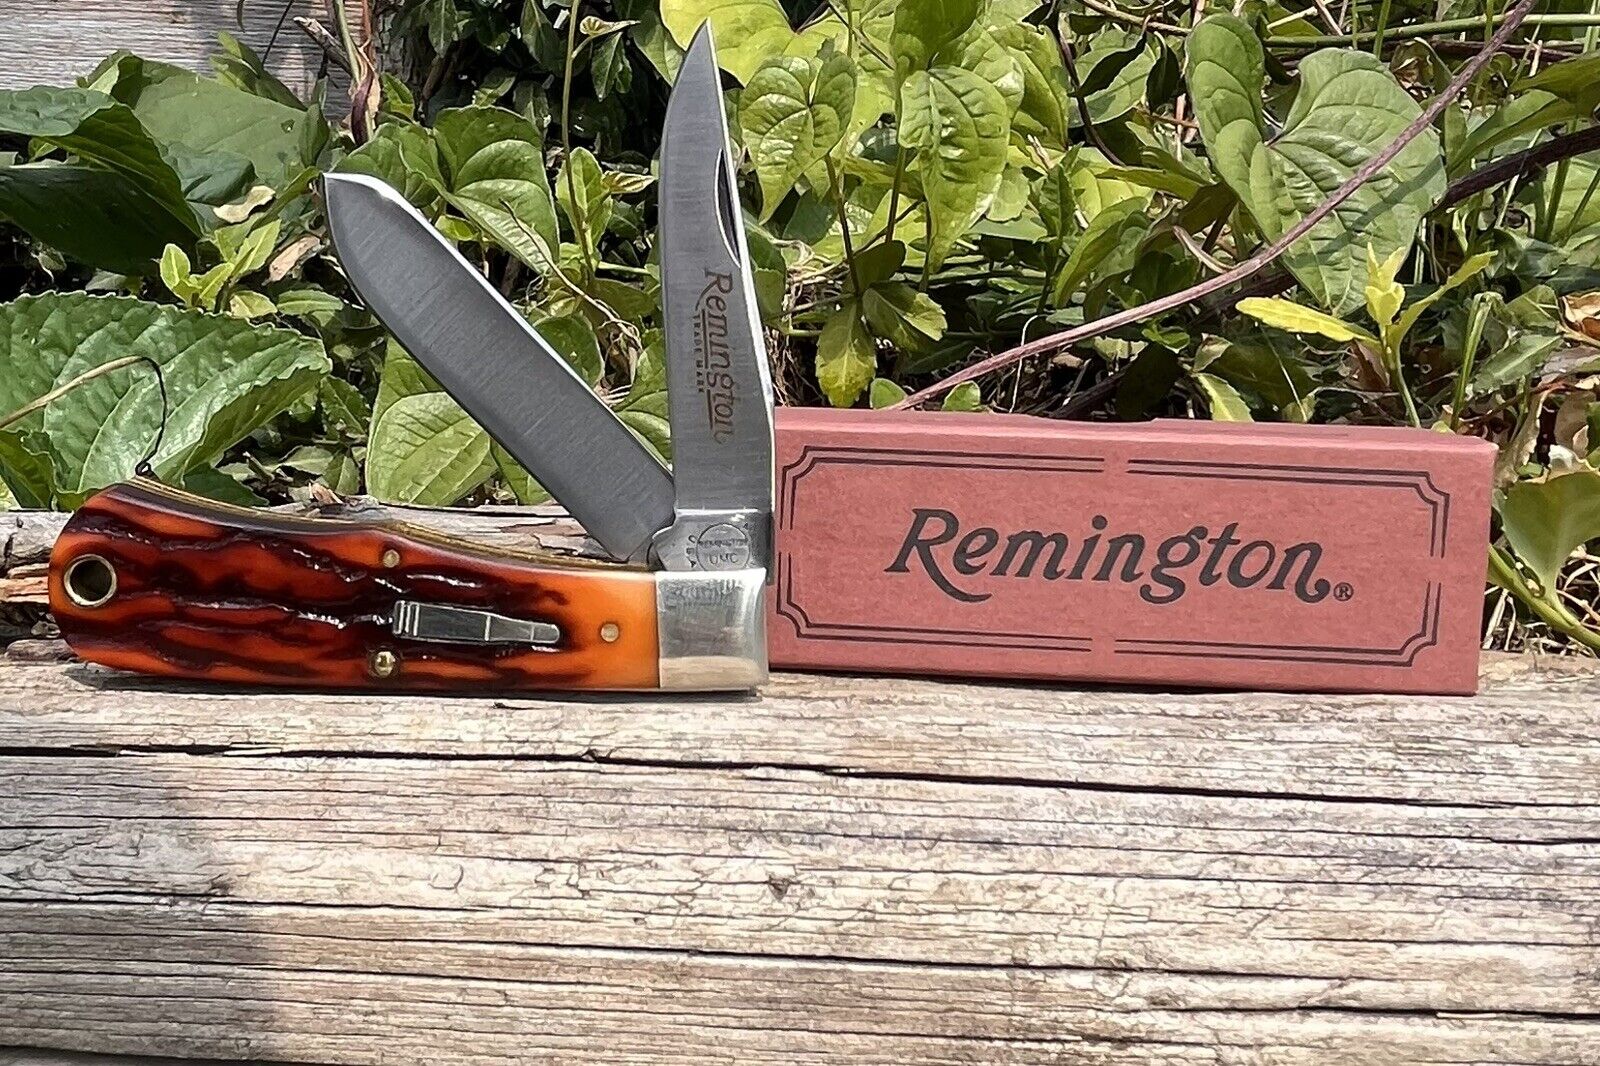 Vintage American Made Pocket Knife. Remington Mini Trapper Bullet Knife Pristine